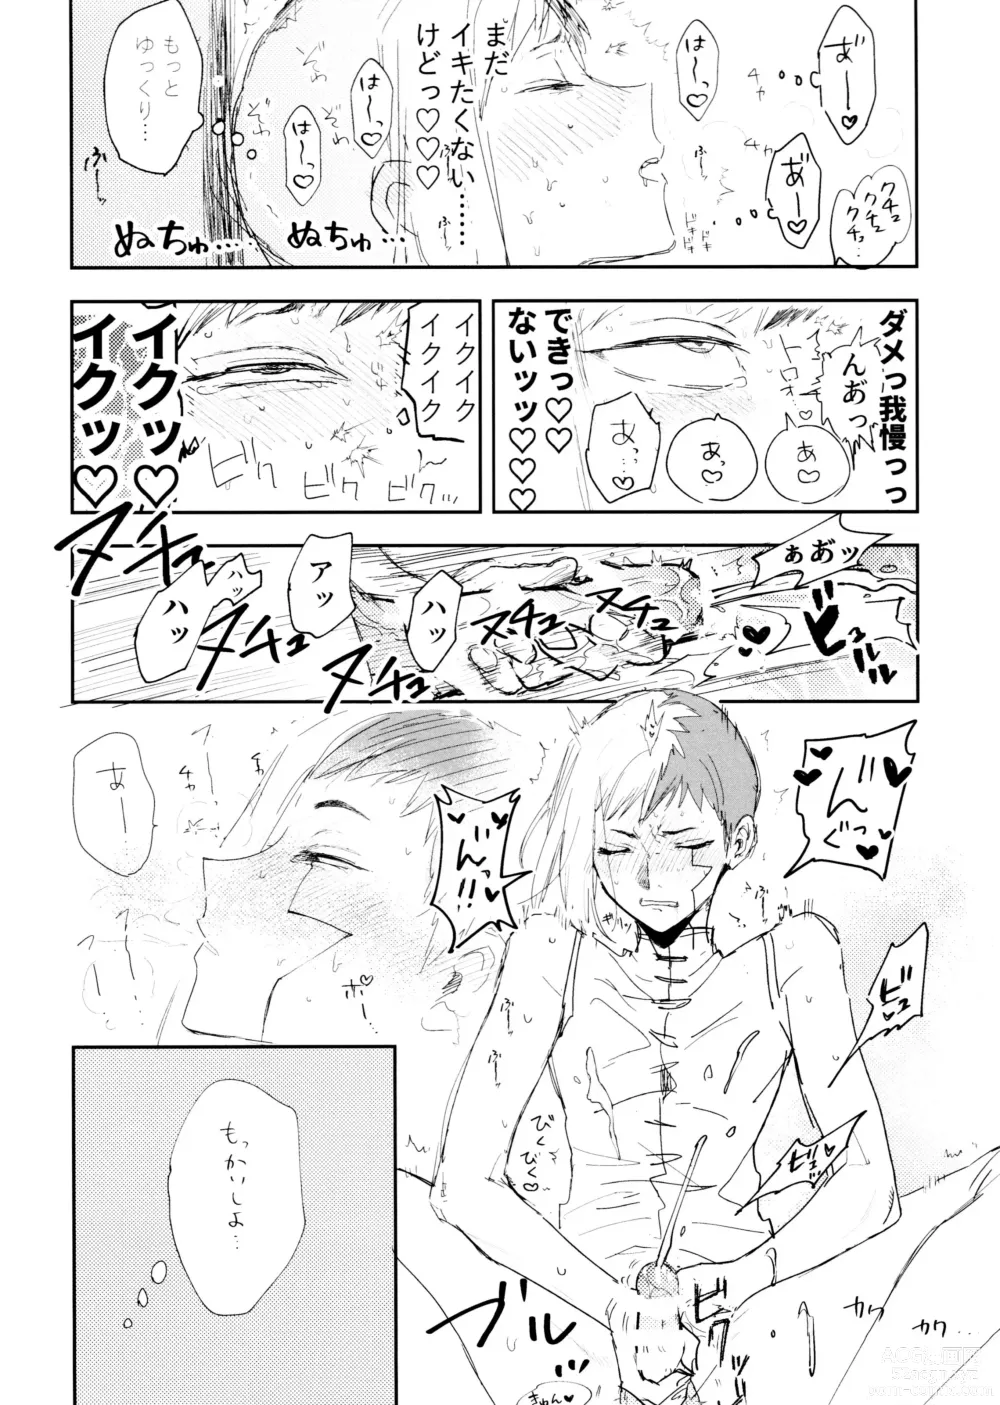 Page 5 of doujinshi SenGen no H na Rakugakishuu